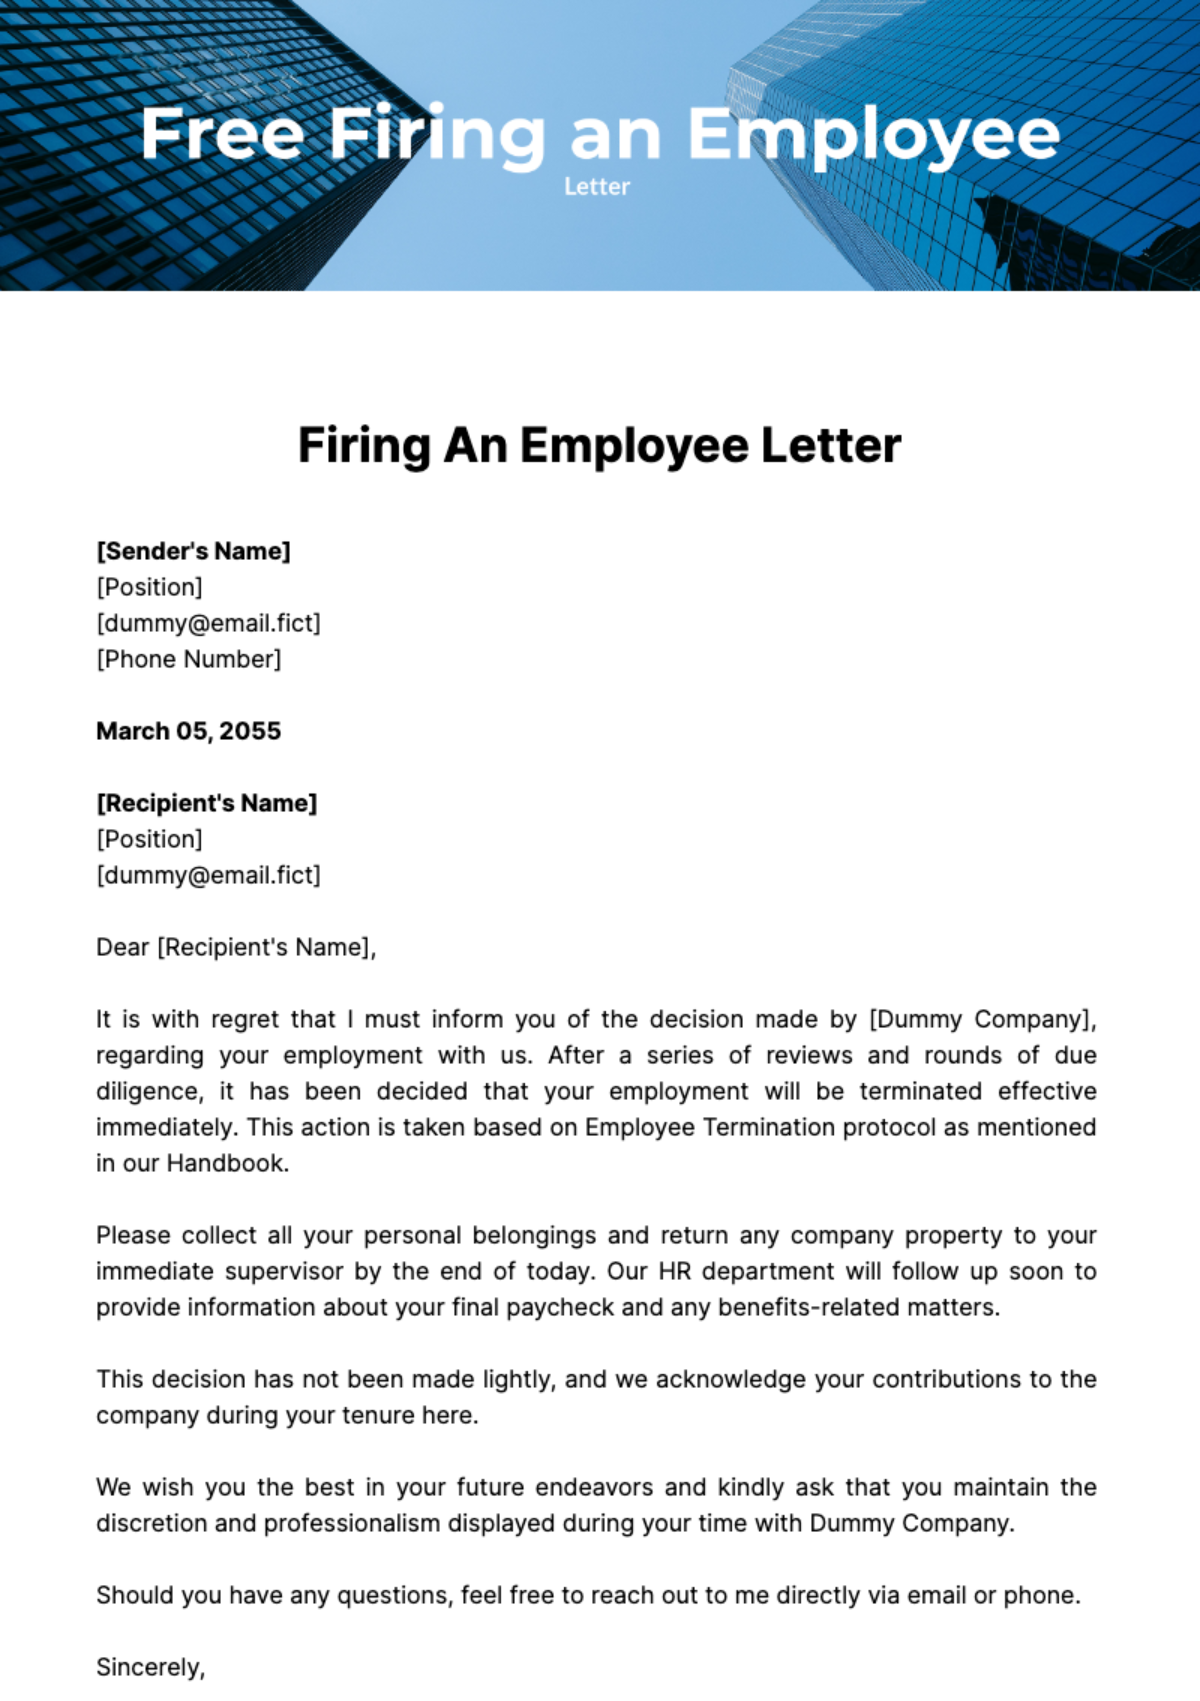 Free Firing an Employee Letter Template